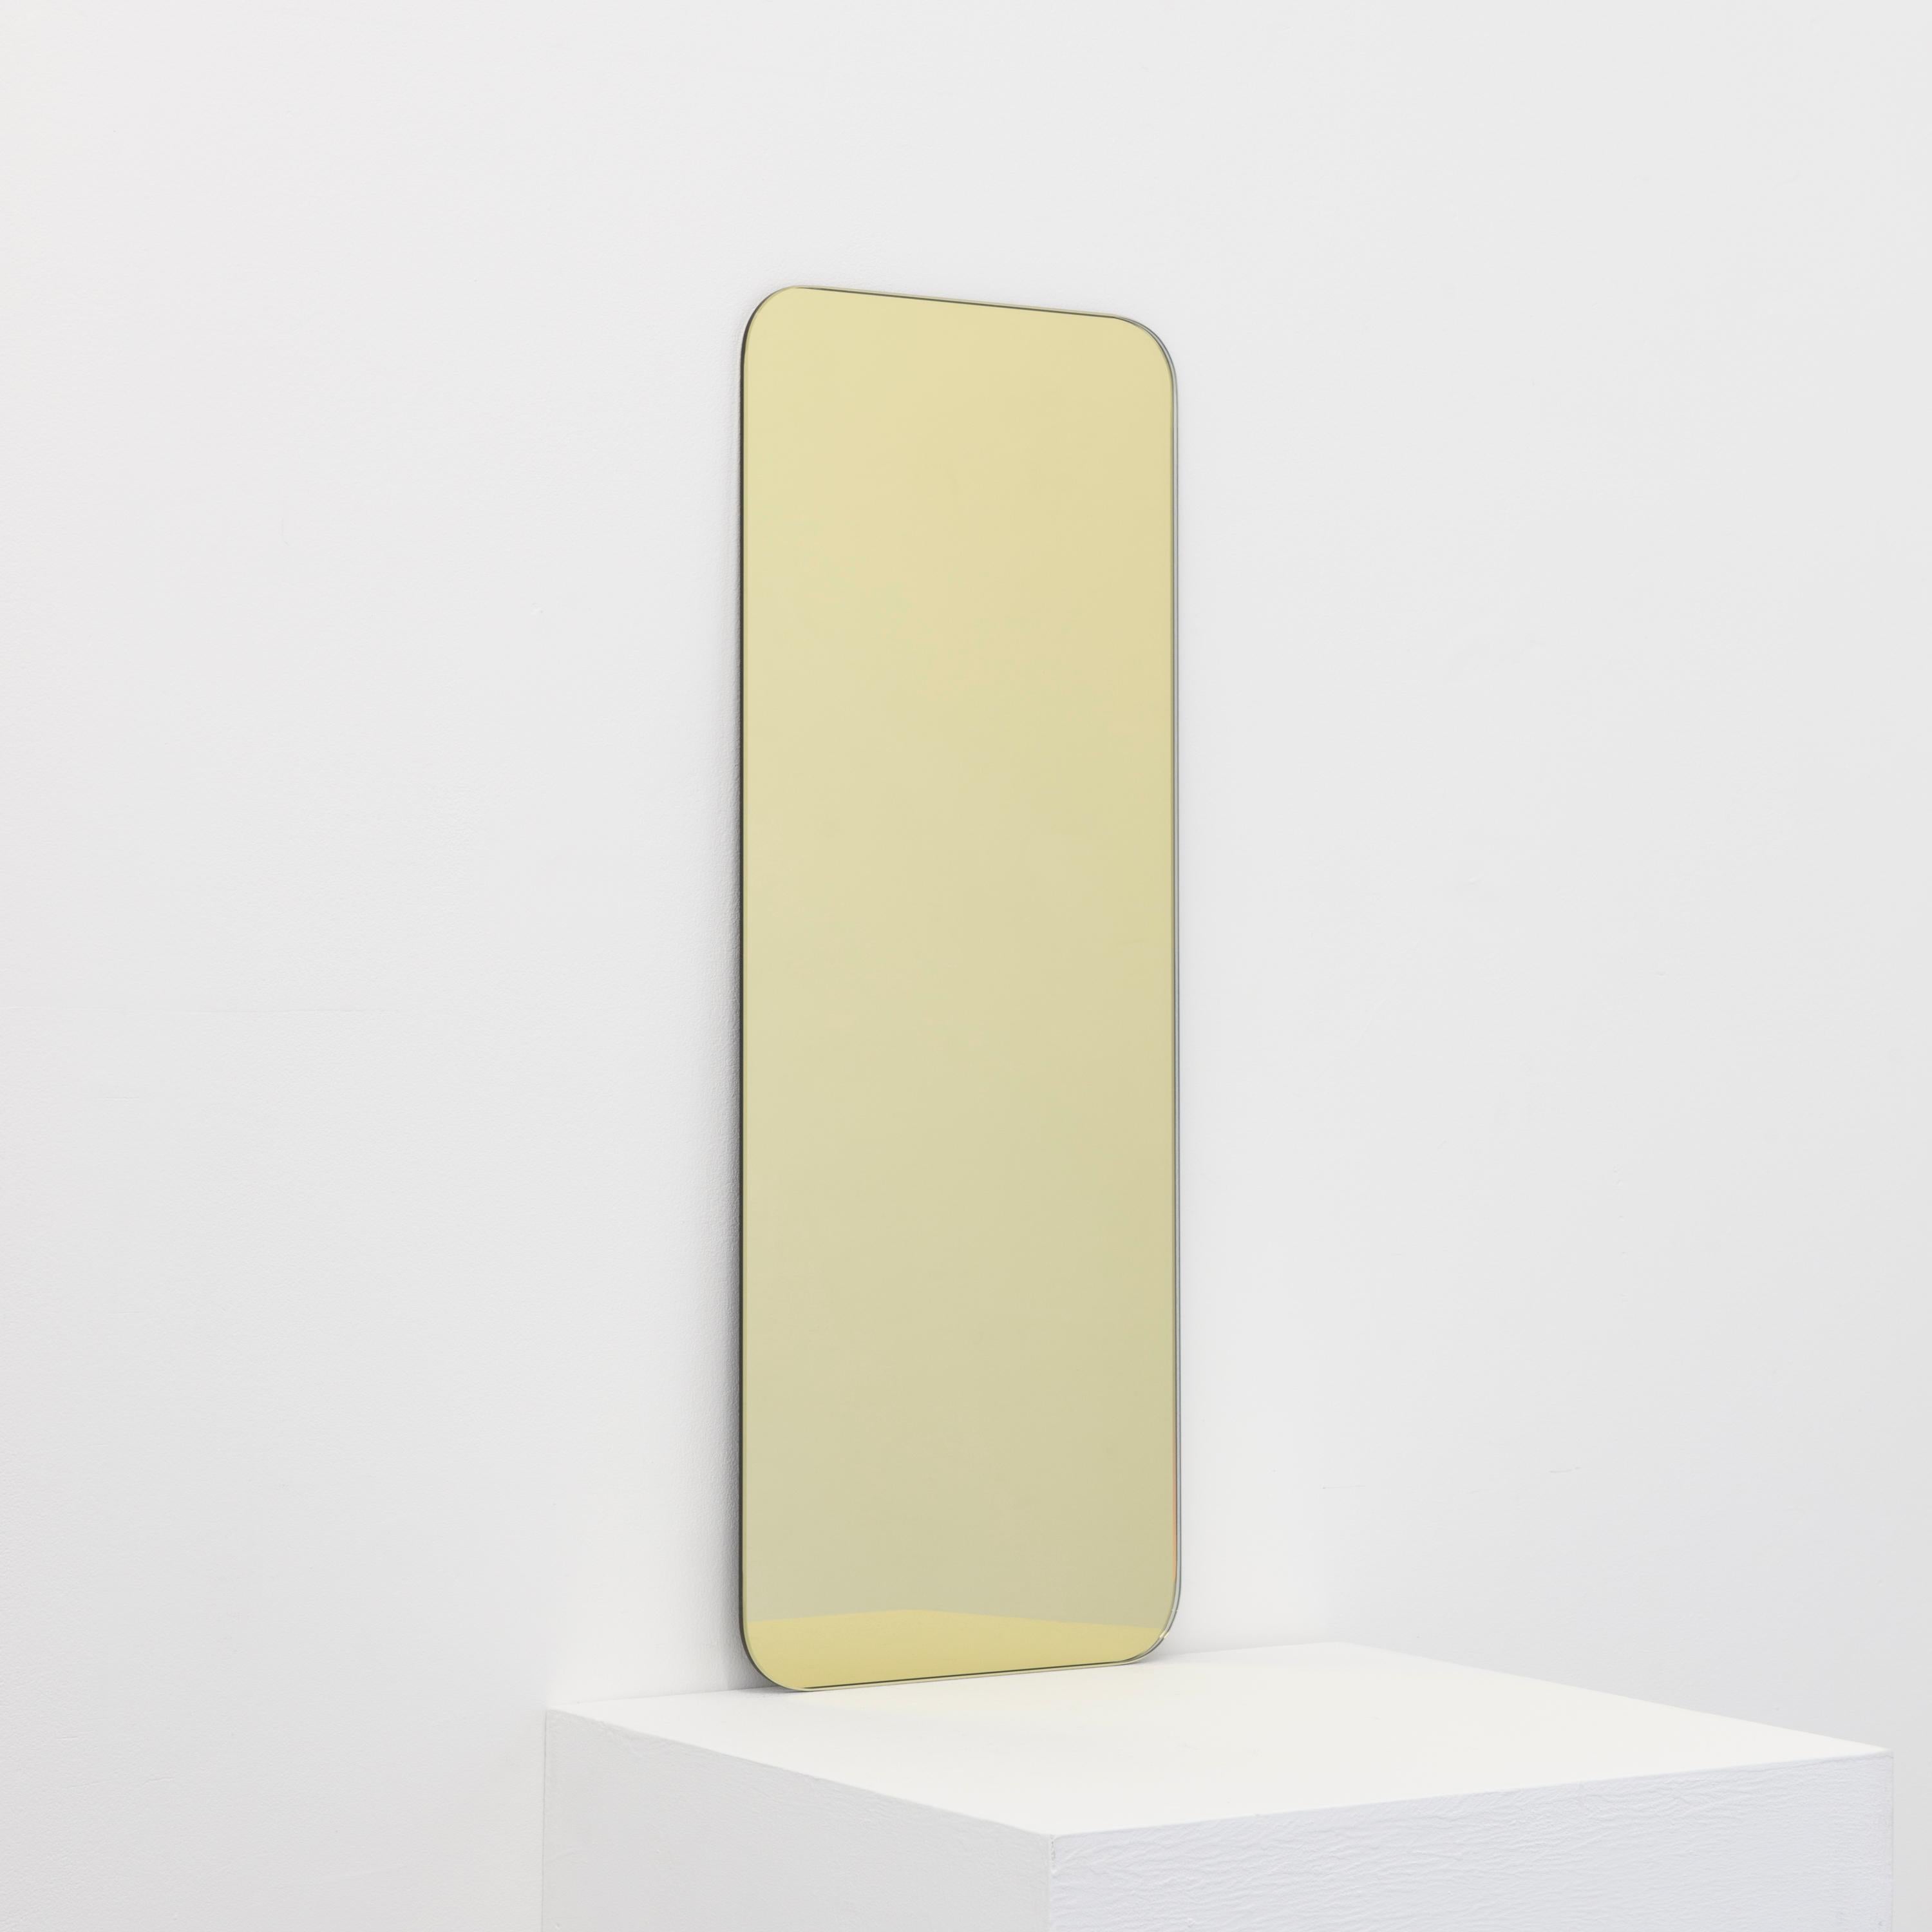 Miroir minimaliste de forme rectangulaire teinté or sans cadre avec un effet flottant. Un design de qualité qui garantit que le miroir est parfaitement parallèle au mur. Conçu et fabriqué à Londres, au Royaume-Uni.

Equipé de plaques